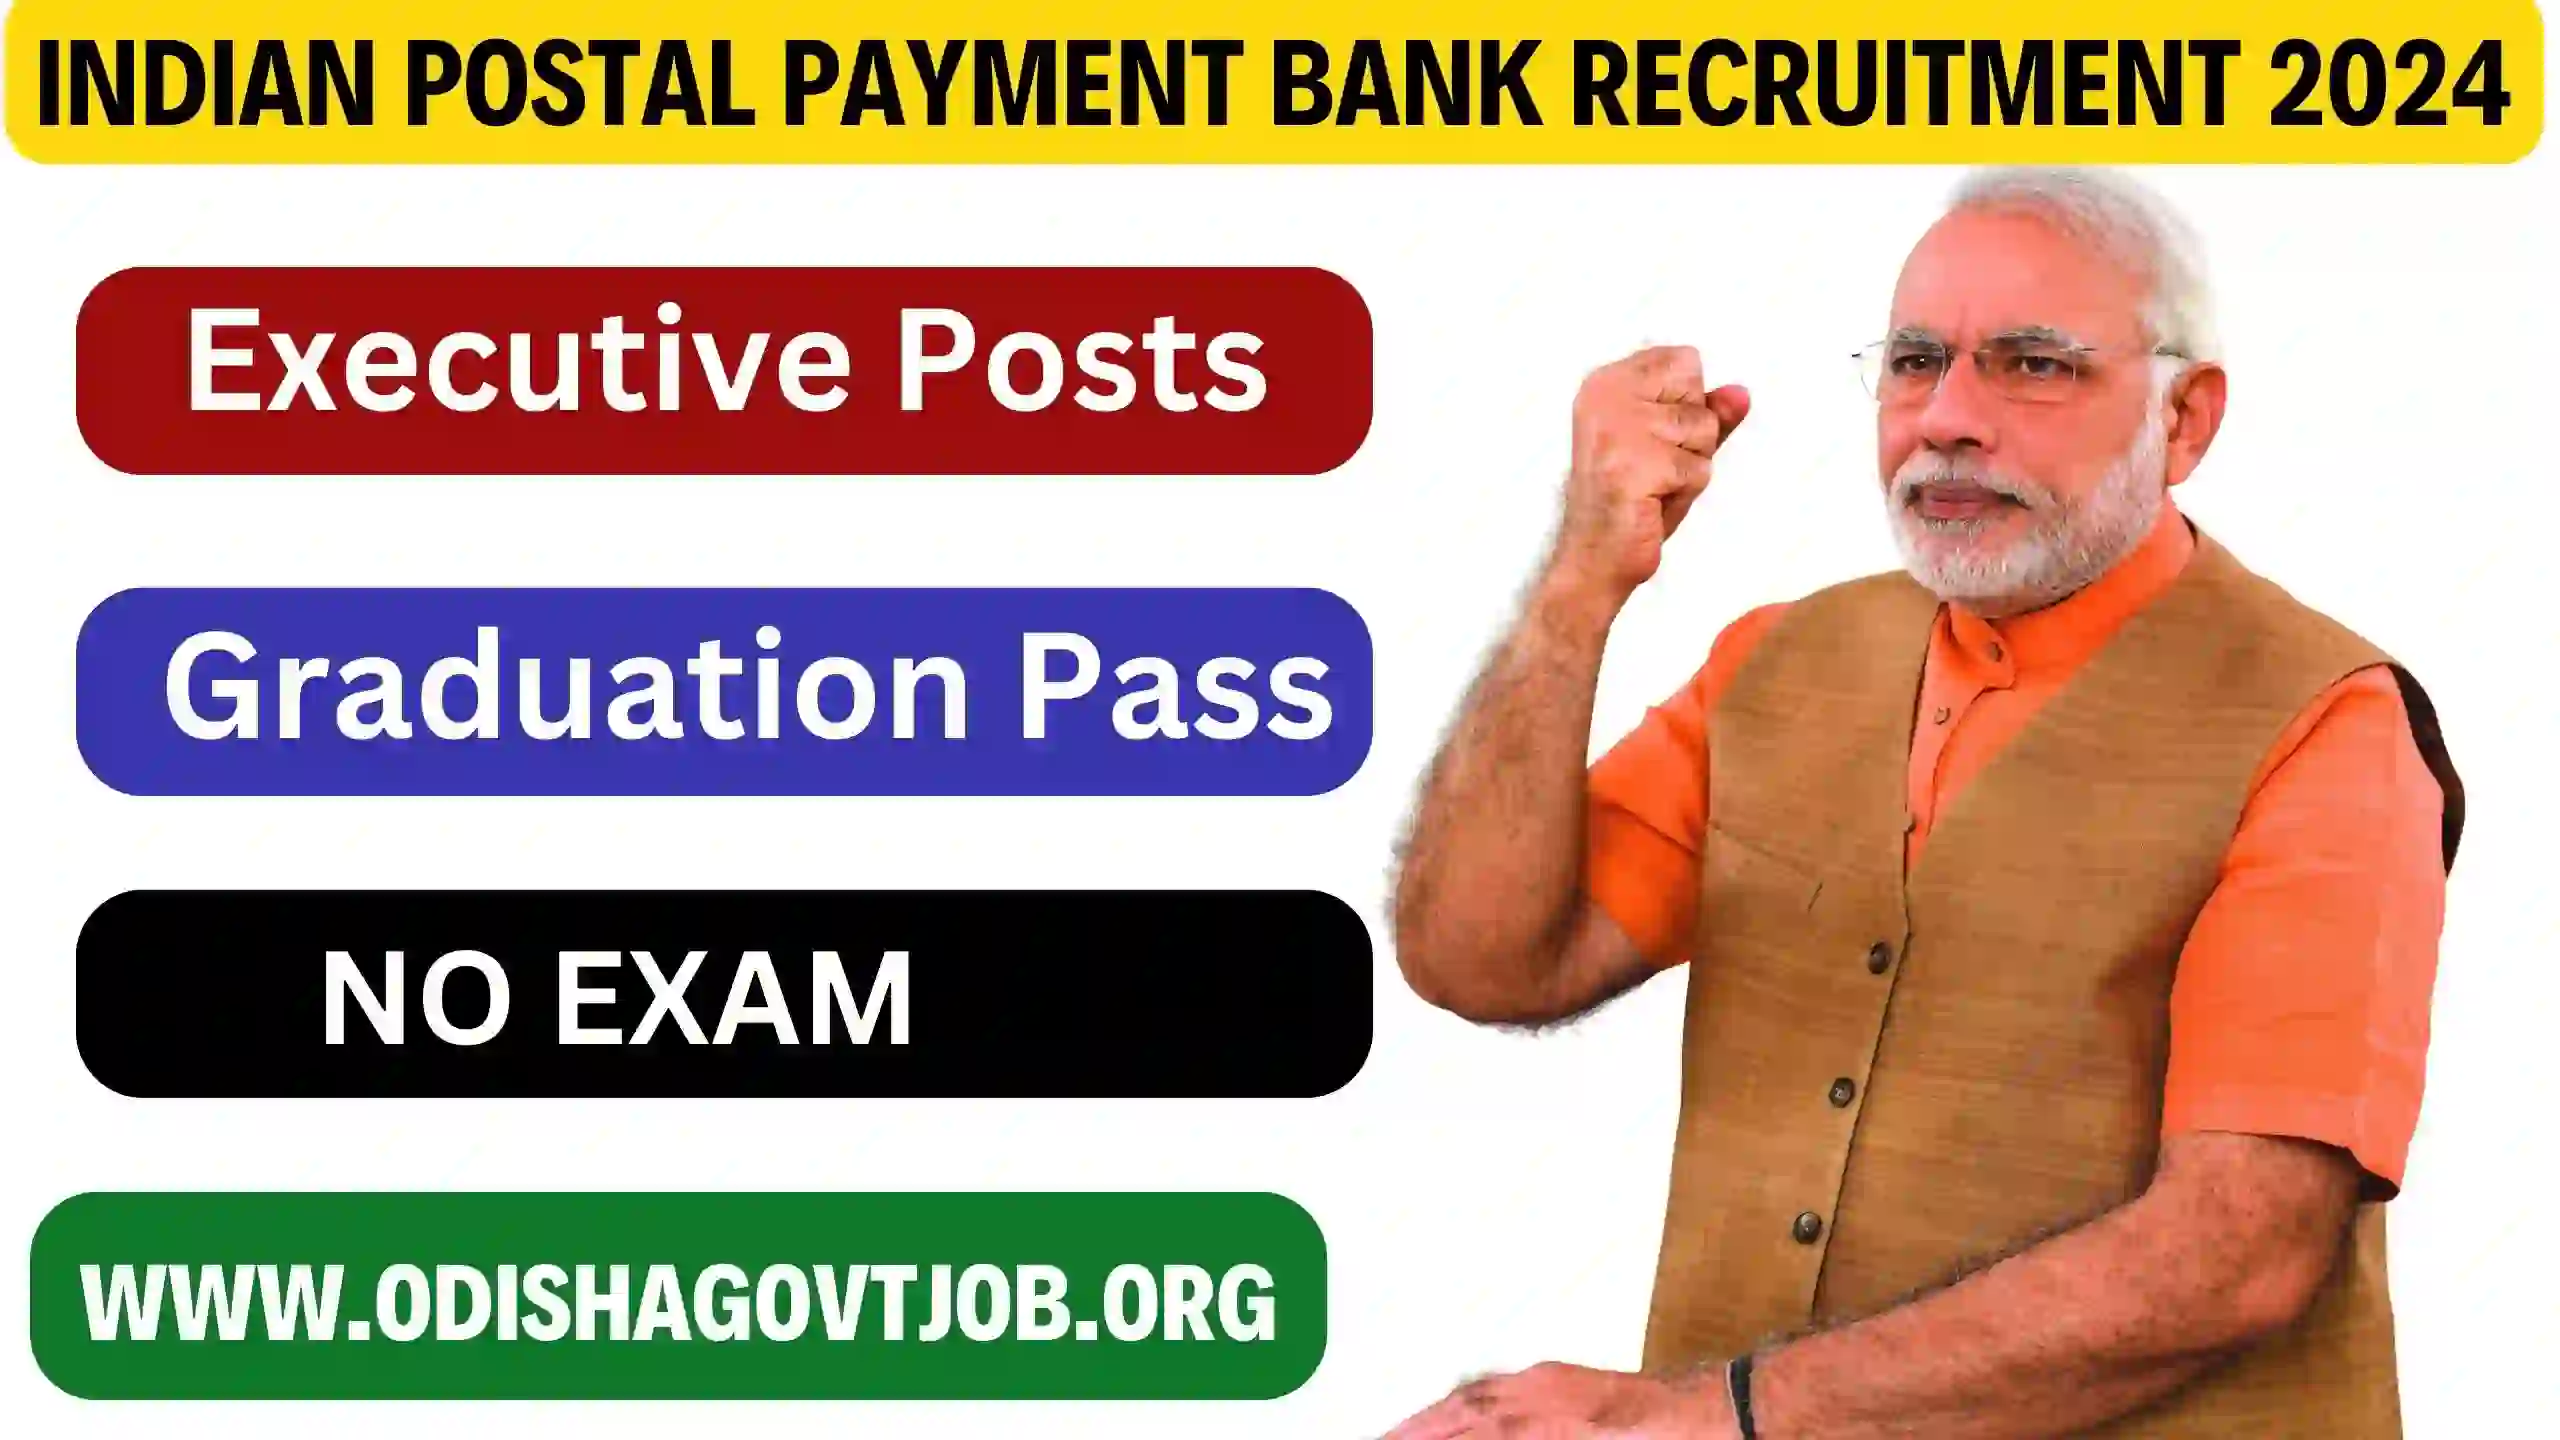 Indian Postal Payment Bank Recruitment 2024